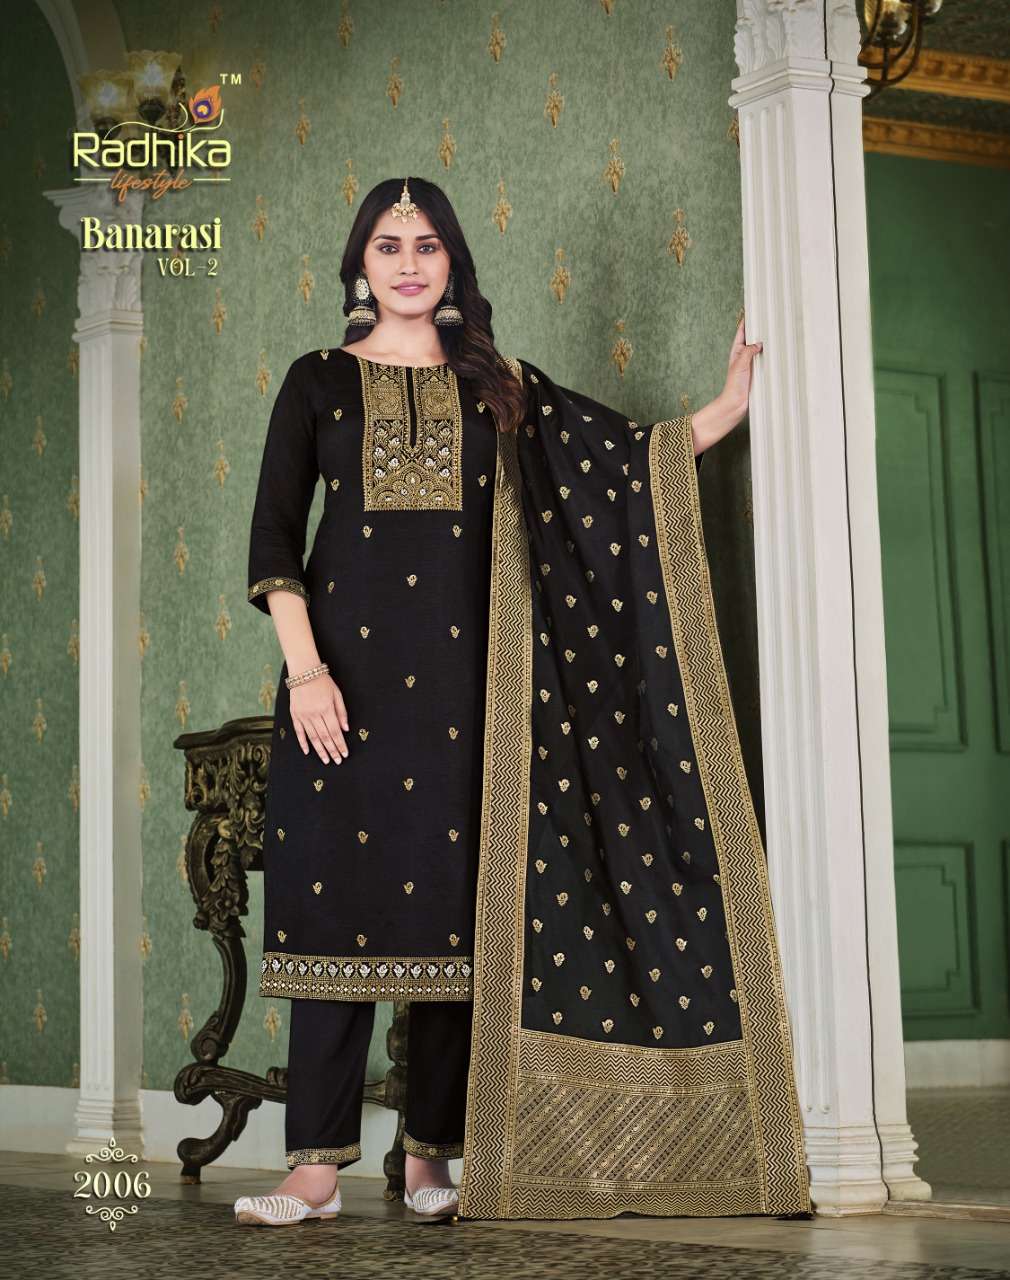 Banarasi Vol 2 Buy Radhika Lifestyle Wholesale Banarasi Fabric Lowest Price Kurtis Set